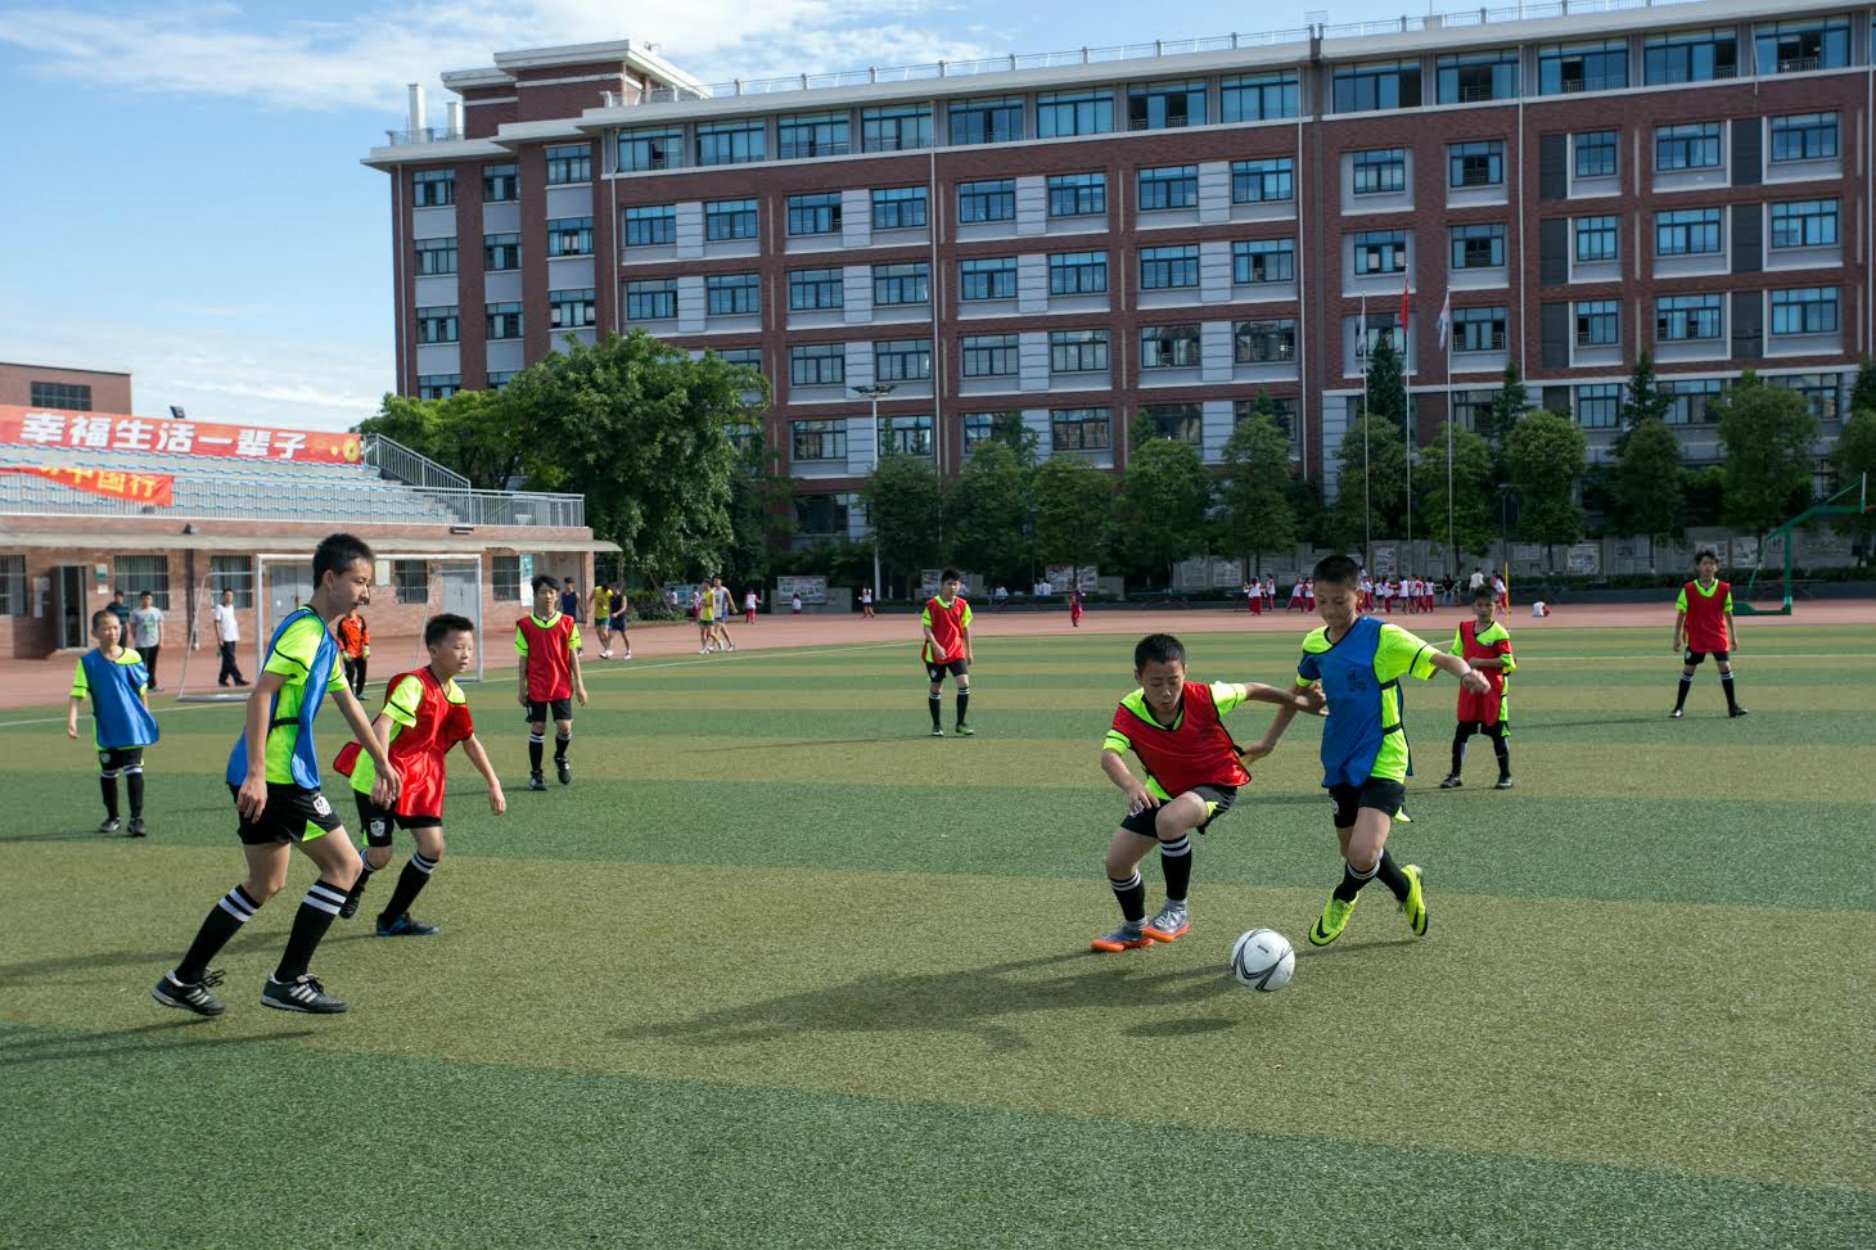 Una empresa catalana tiene el objetivo de mejorar el fútbol en China